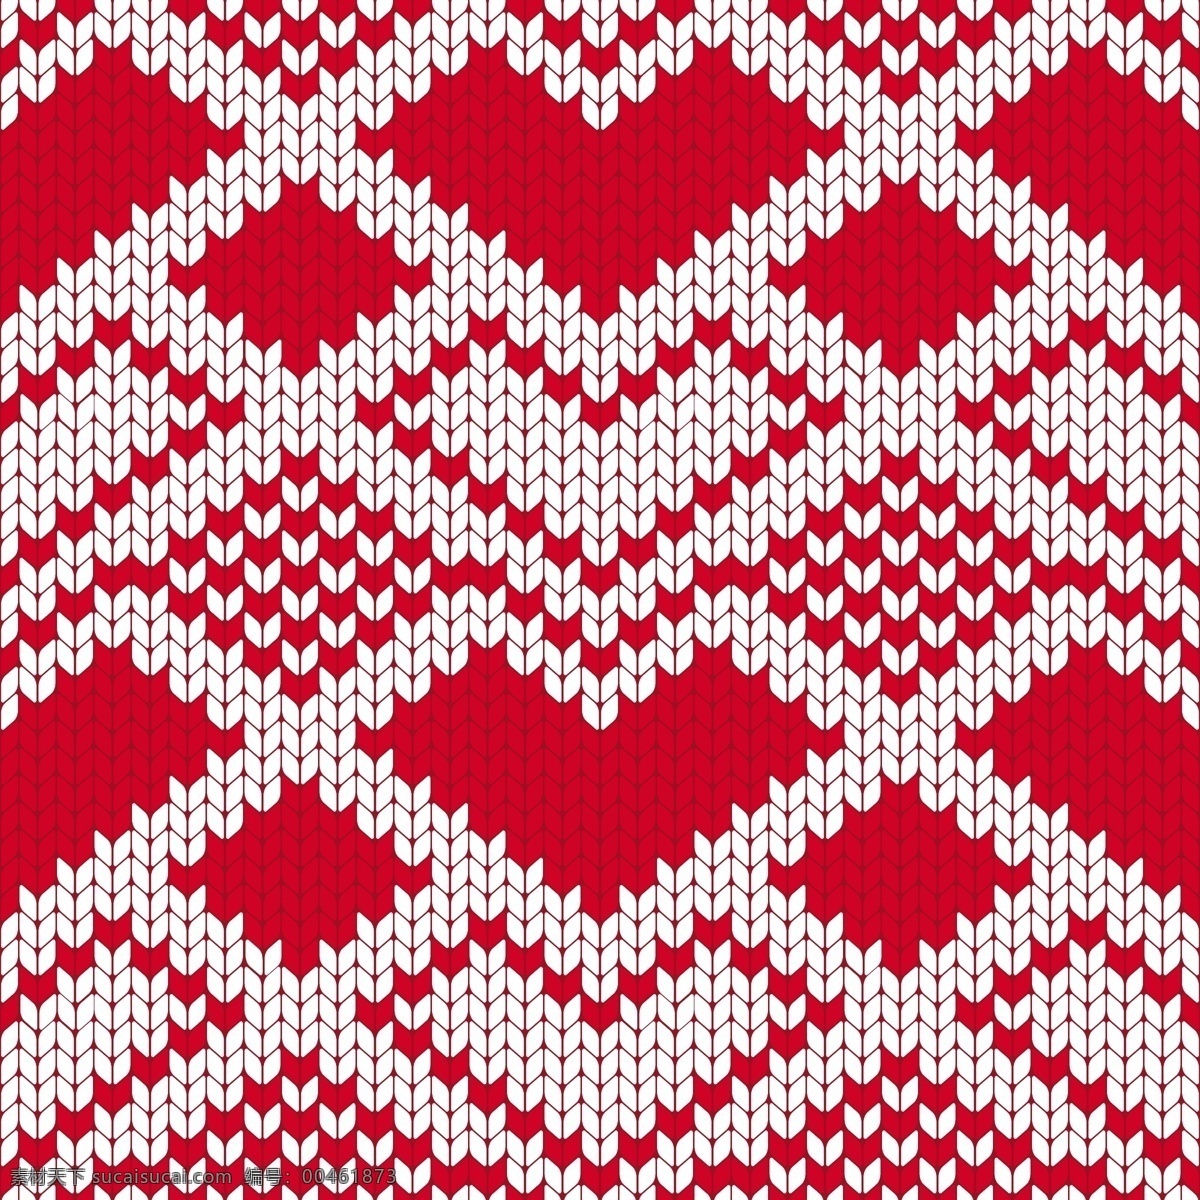 大红 爱心 圣诞节 填充 背景 矢量 冬季 红色 节日 平面素材 设计素材 矢量素材 下雪 心形 雪白